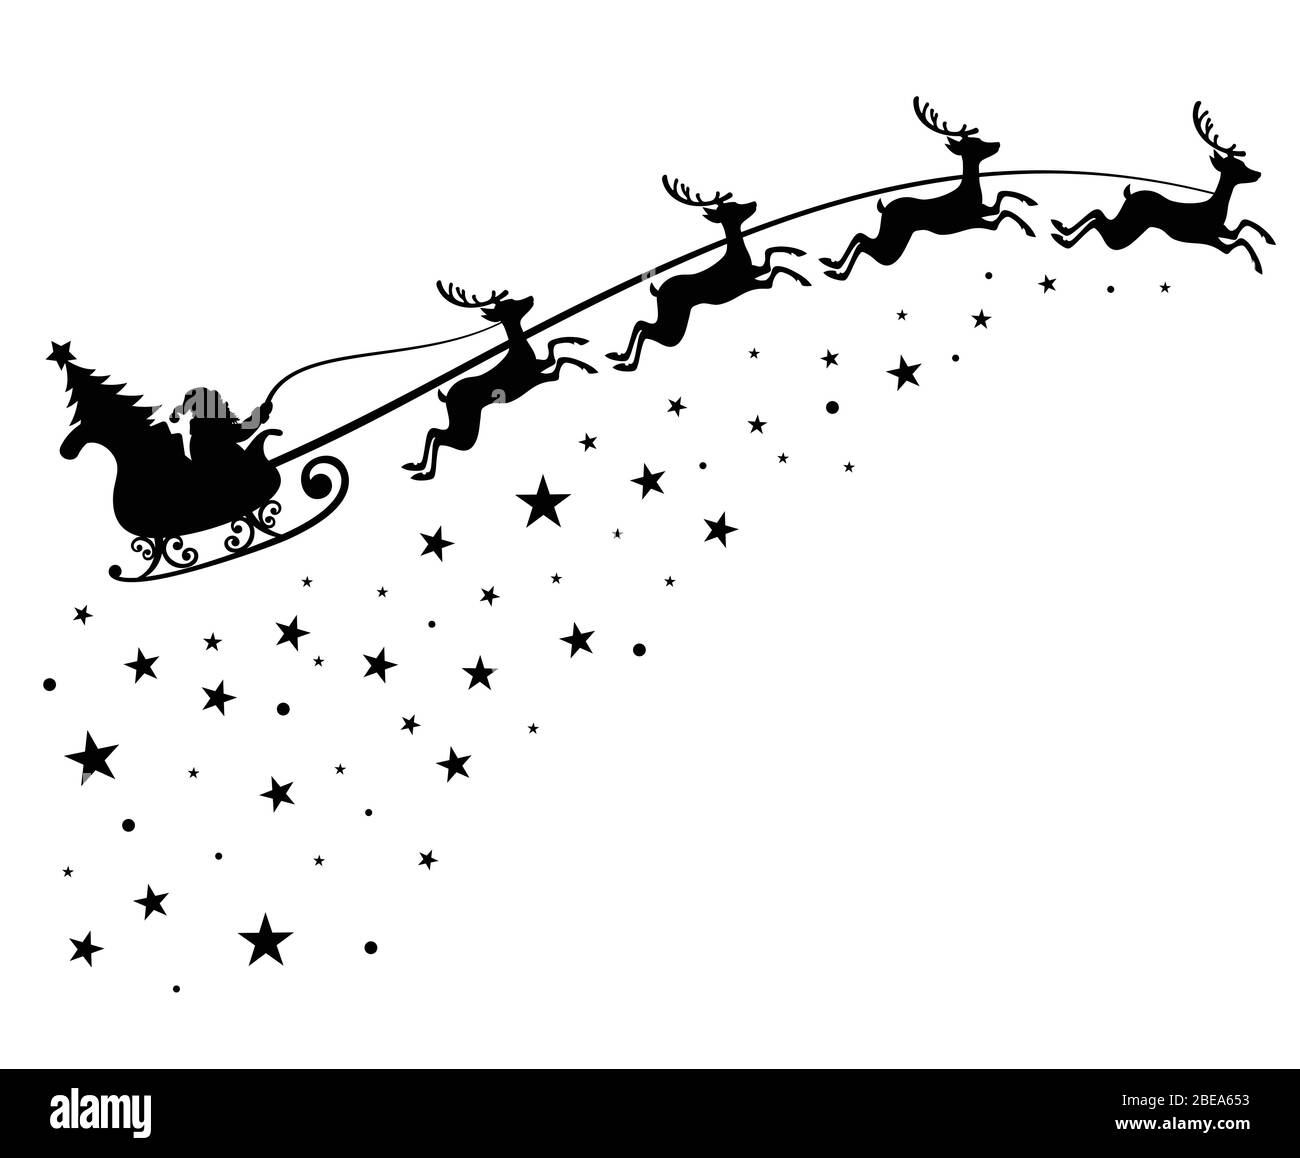 Le Père Noël sur le ciel en traîneau avec silhouette noire déers vecteur pour la décoration de vacances d'hiver et carte de vœux de Noël. père noël monochrome avec arbre de noël dans l'illustration du ciel nocturne Illustration de Vecteur